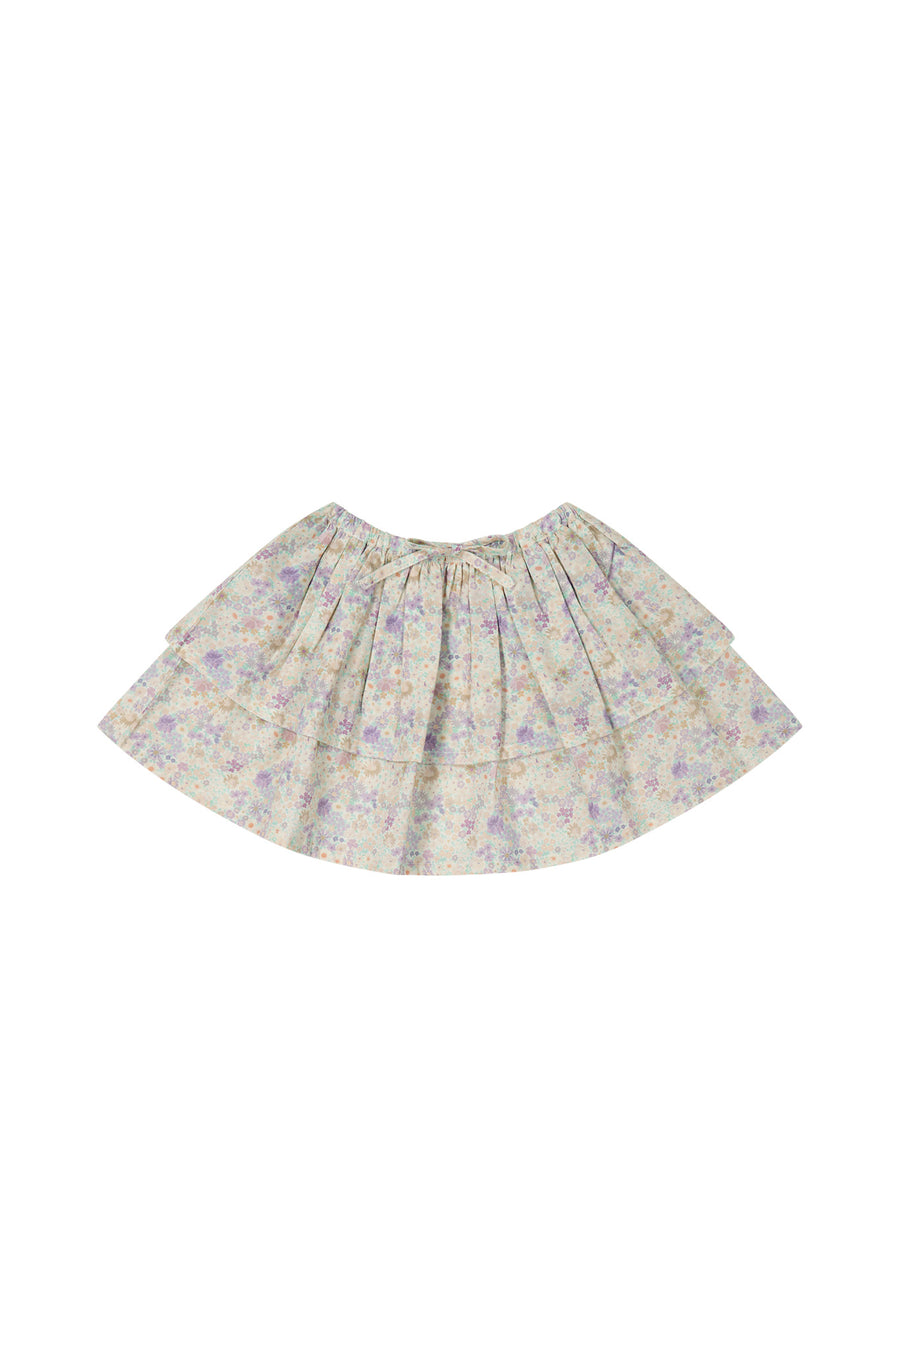 Organic Cotton Heidi Skirt - Mayflower Childrens Skirt from Jamie Kay NZ